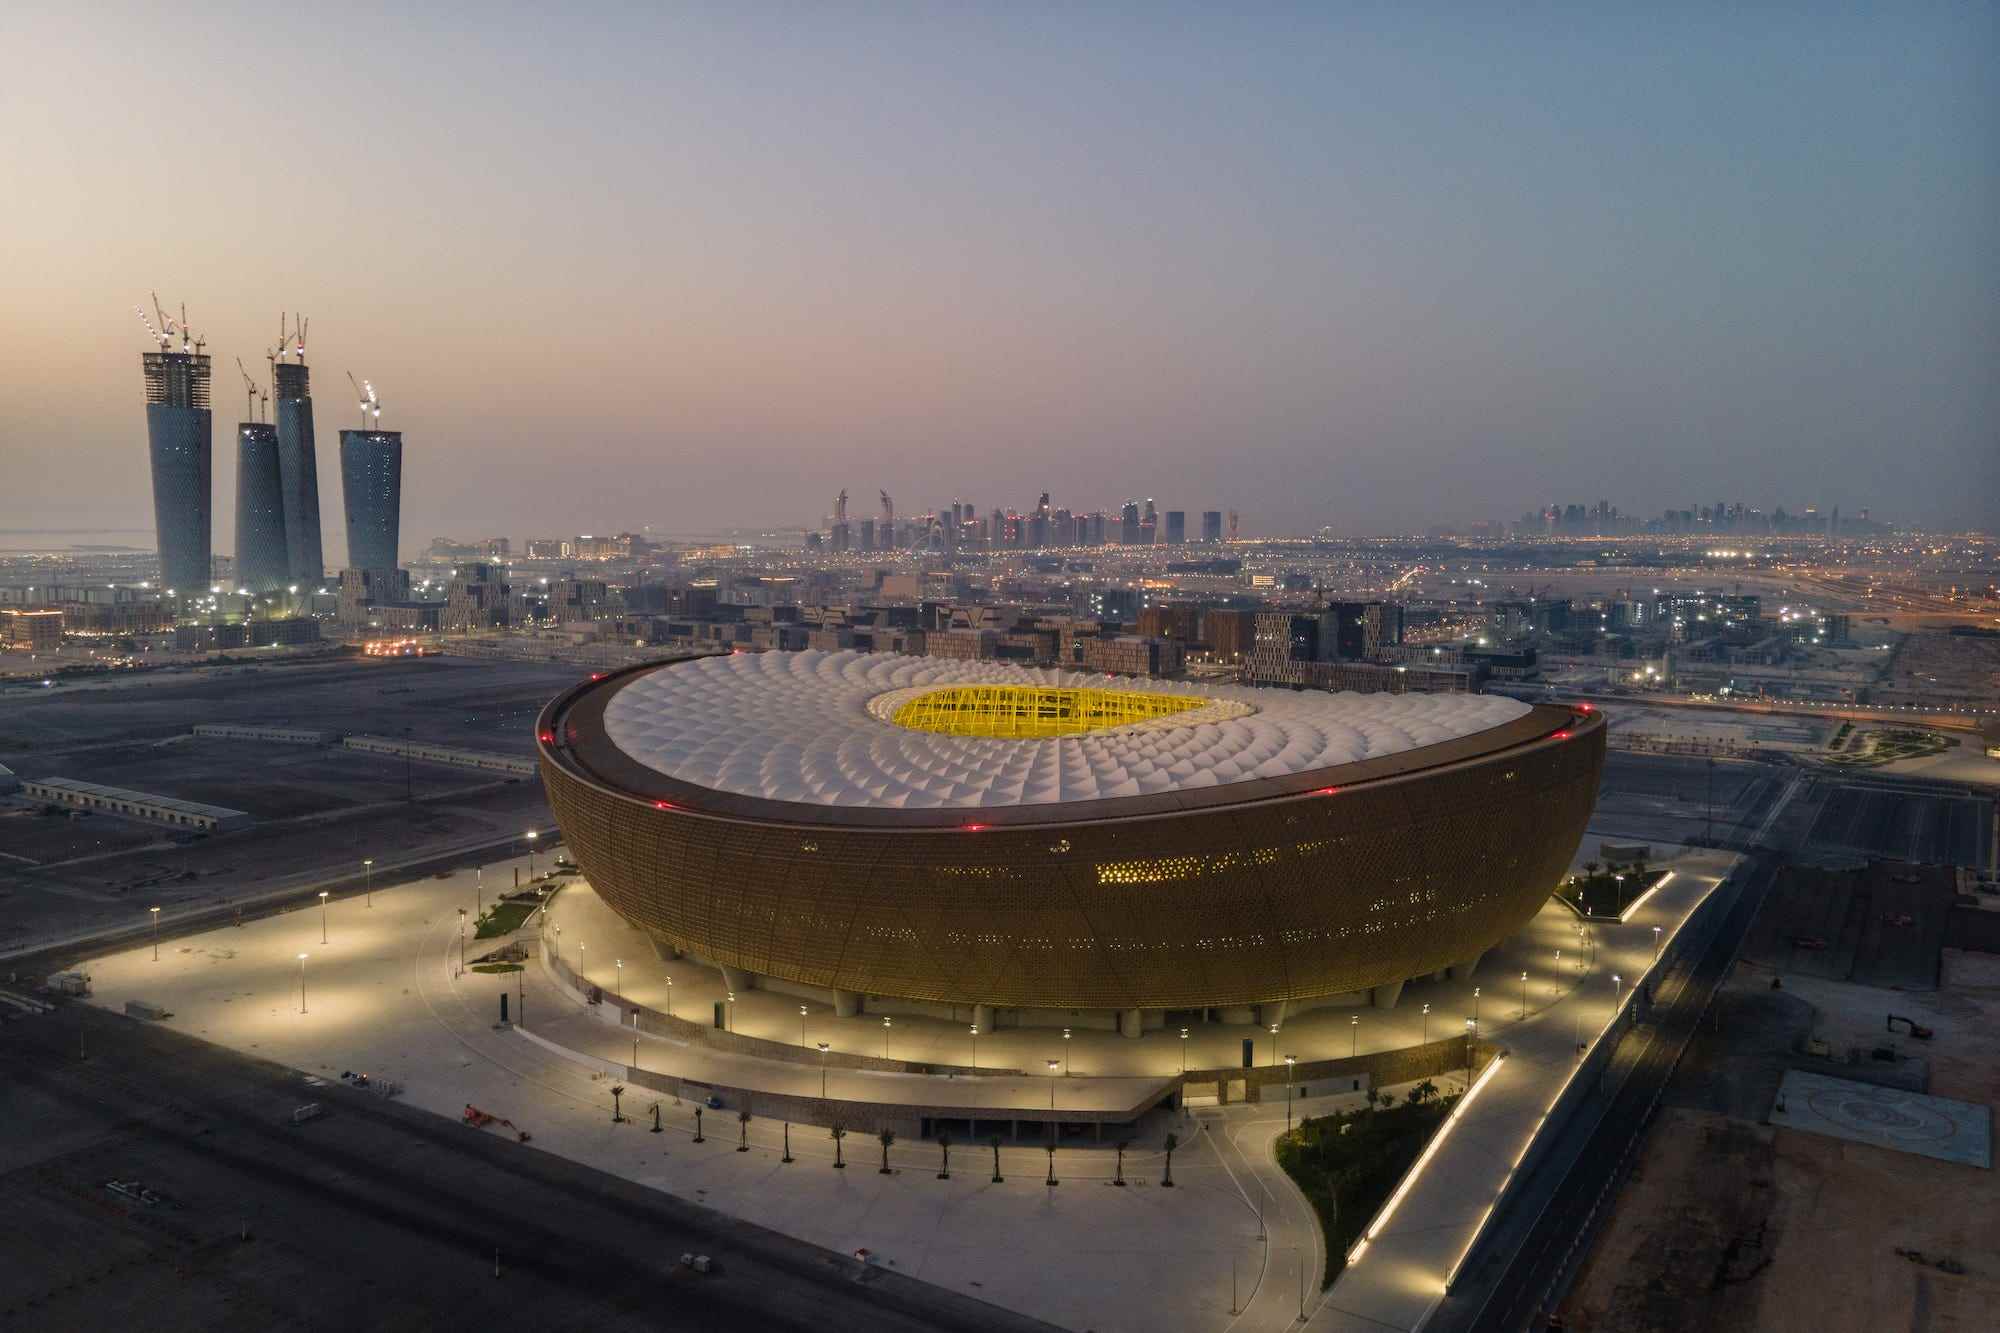 Eine Luftaufnahme des Lusail-Stadions bei Sonnenaufgang am 20. Juni 2022 in Doha, Katar.  Das vom Studio Foster + Partners entworfene Stadion mit 80.000 Sitzplätzen wird das Endspiel der FIFA Fussball-Weltmeisterschaft Katar 2022 ausrichten.